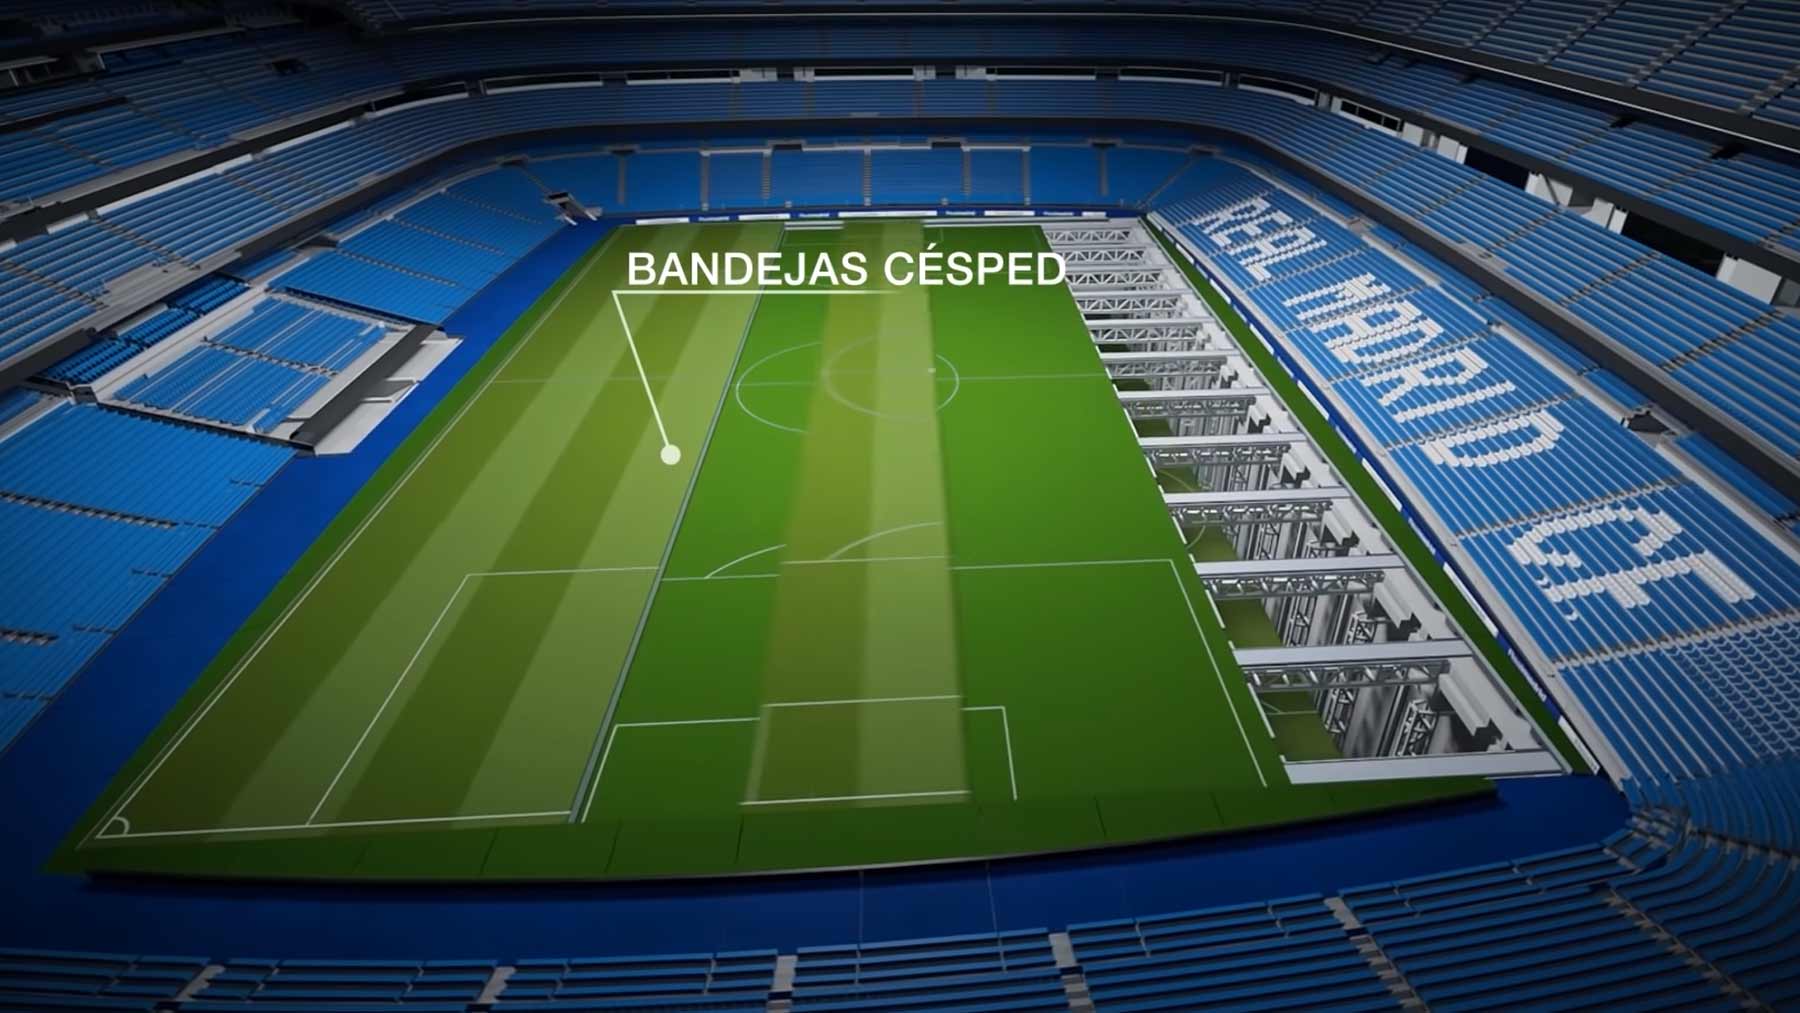 Das neue Stadion von Real Madrid steckt voller technischer Finessen